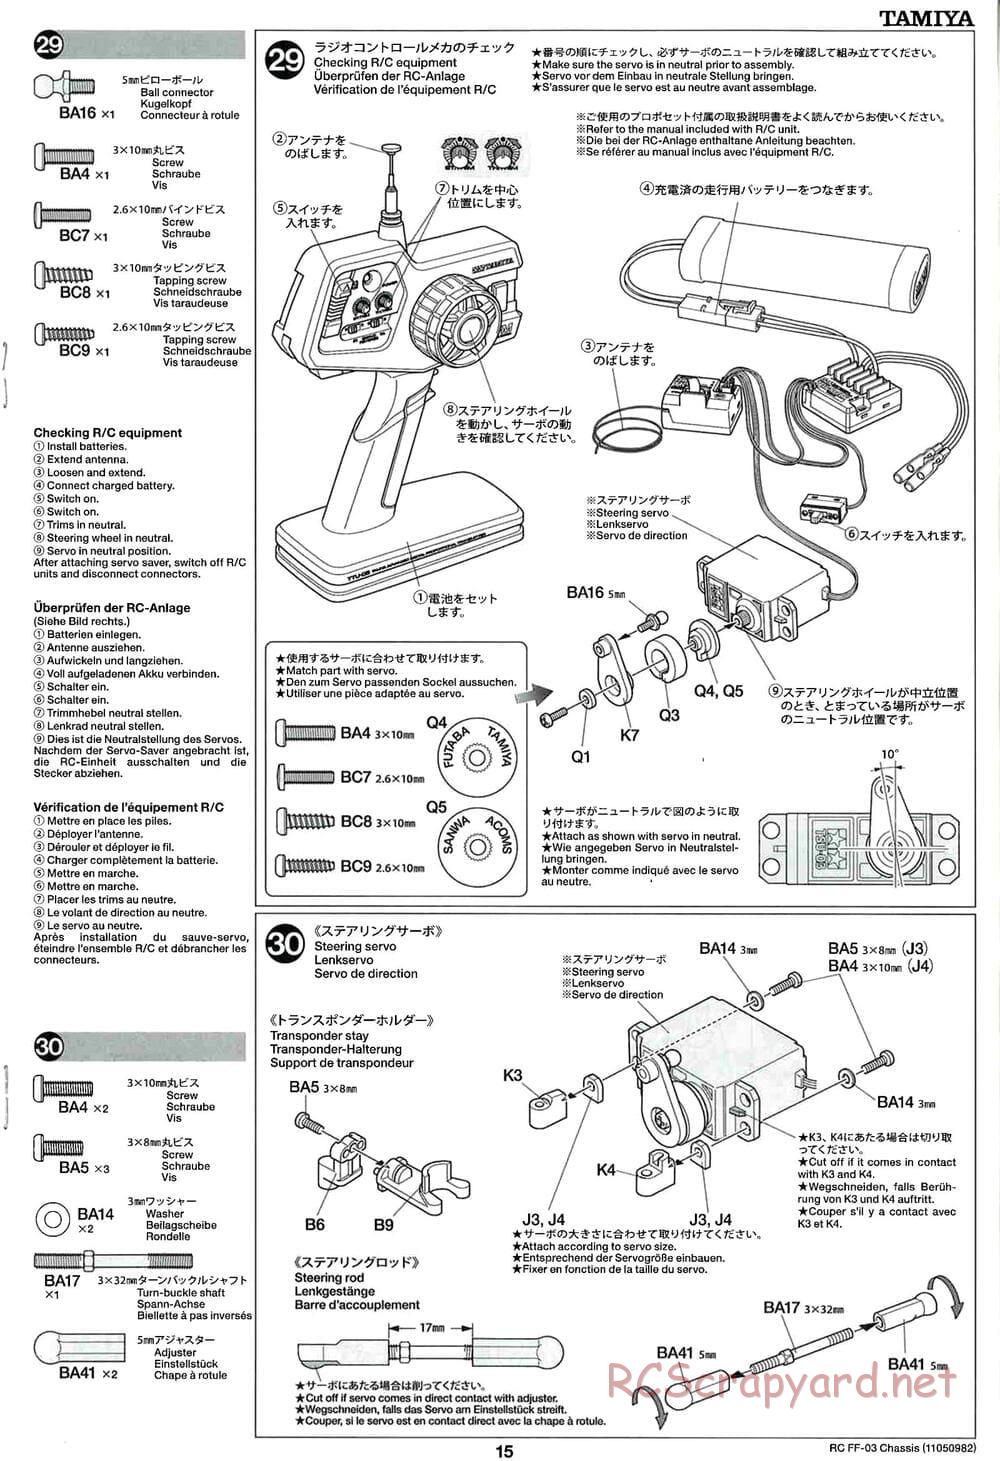 Tamiya - Honda CR-Z - FF-03 Chassis - Manual - Page 15